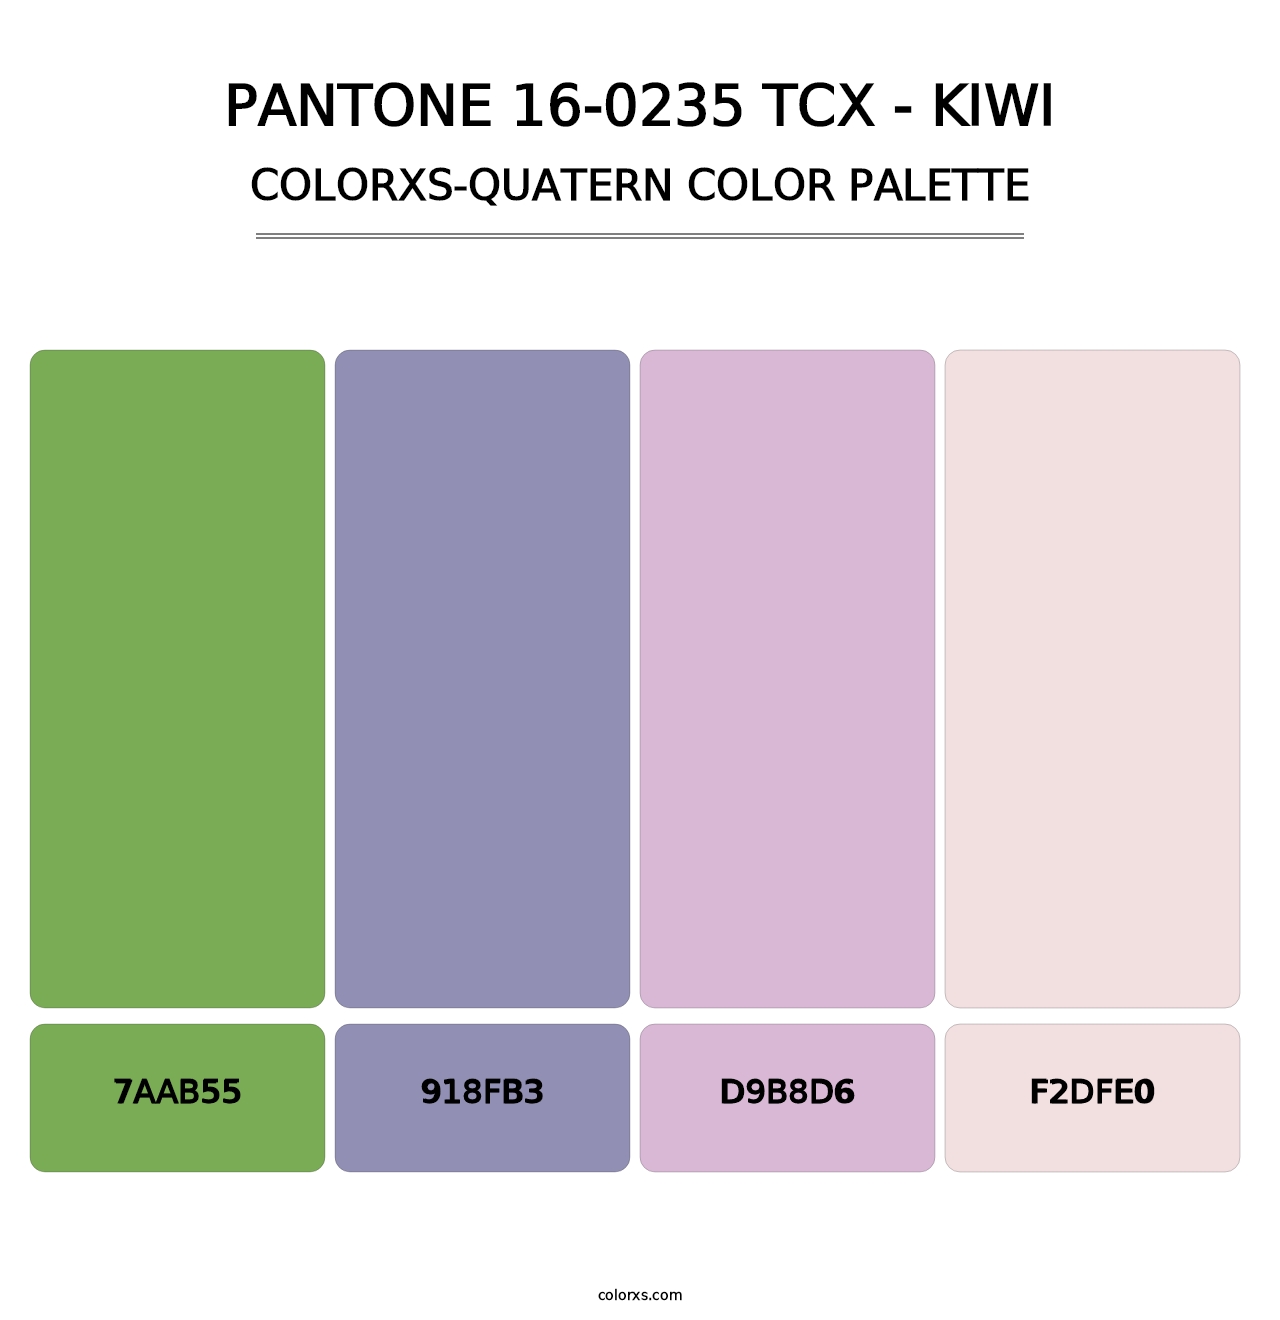 PANTONE 16-0235 TCX - Kiwi - Colorxs Quatern Palette